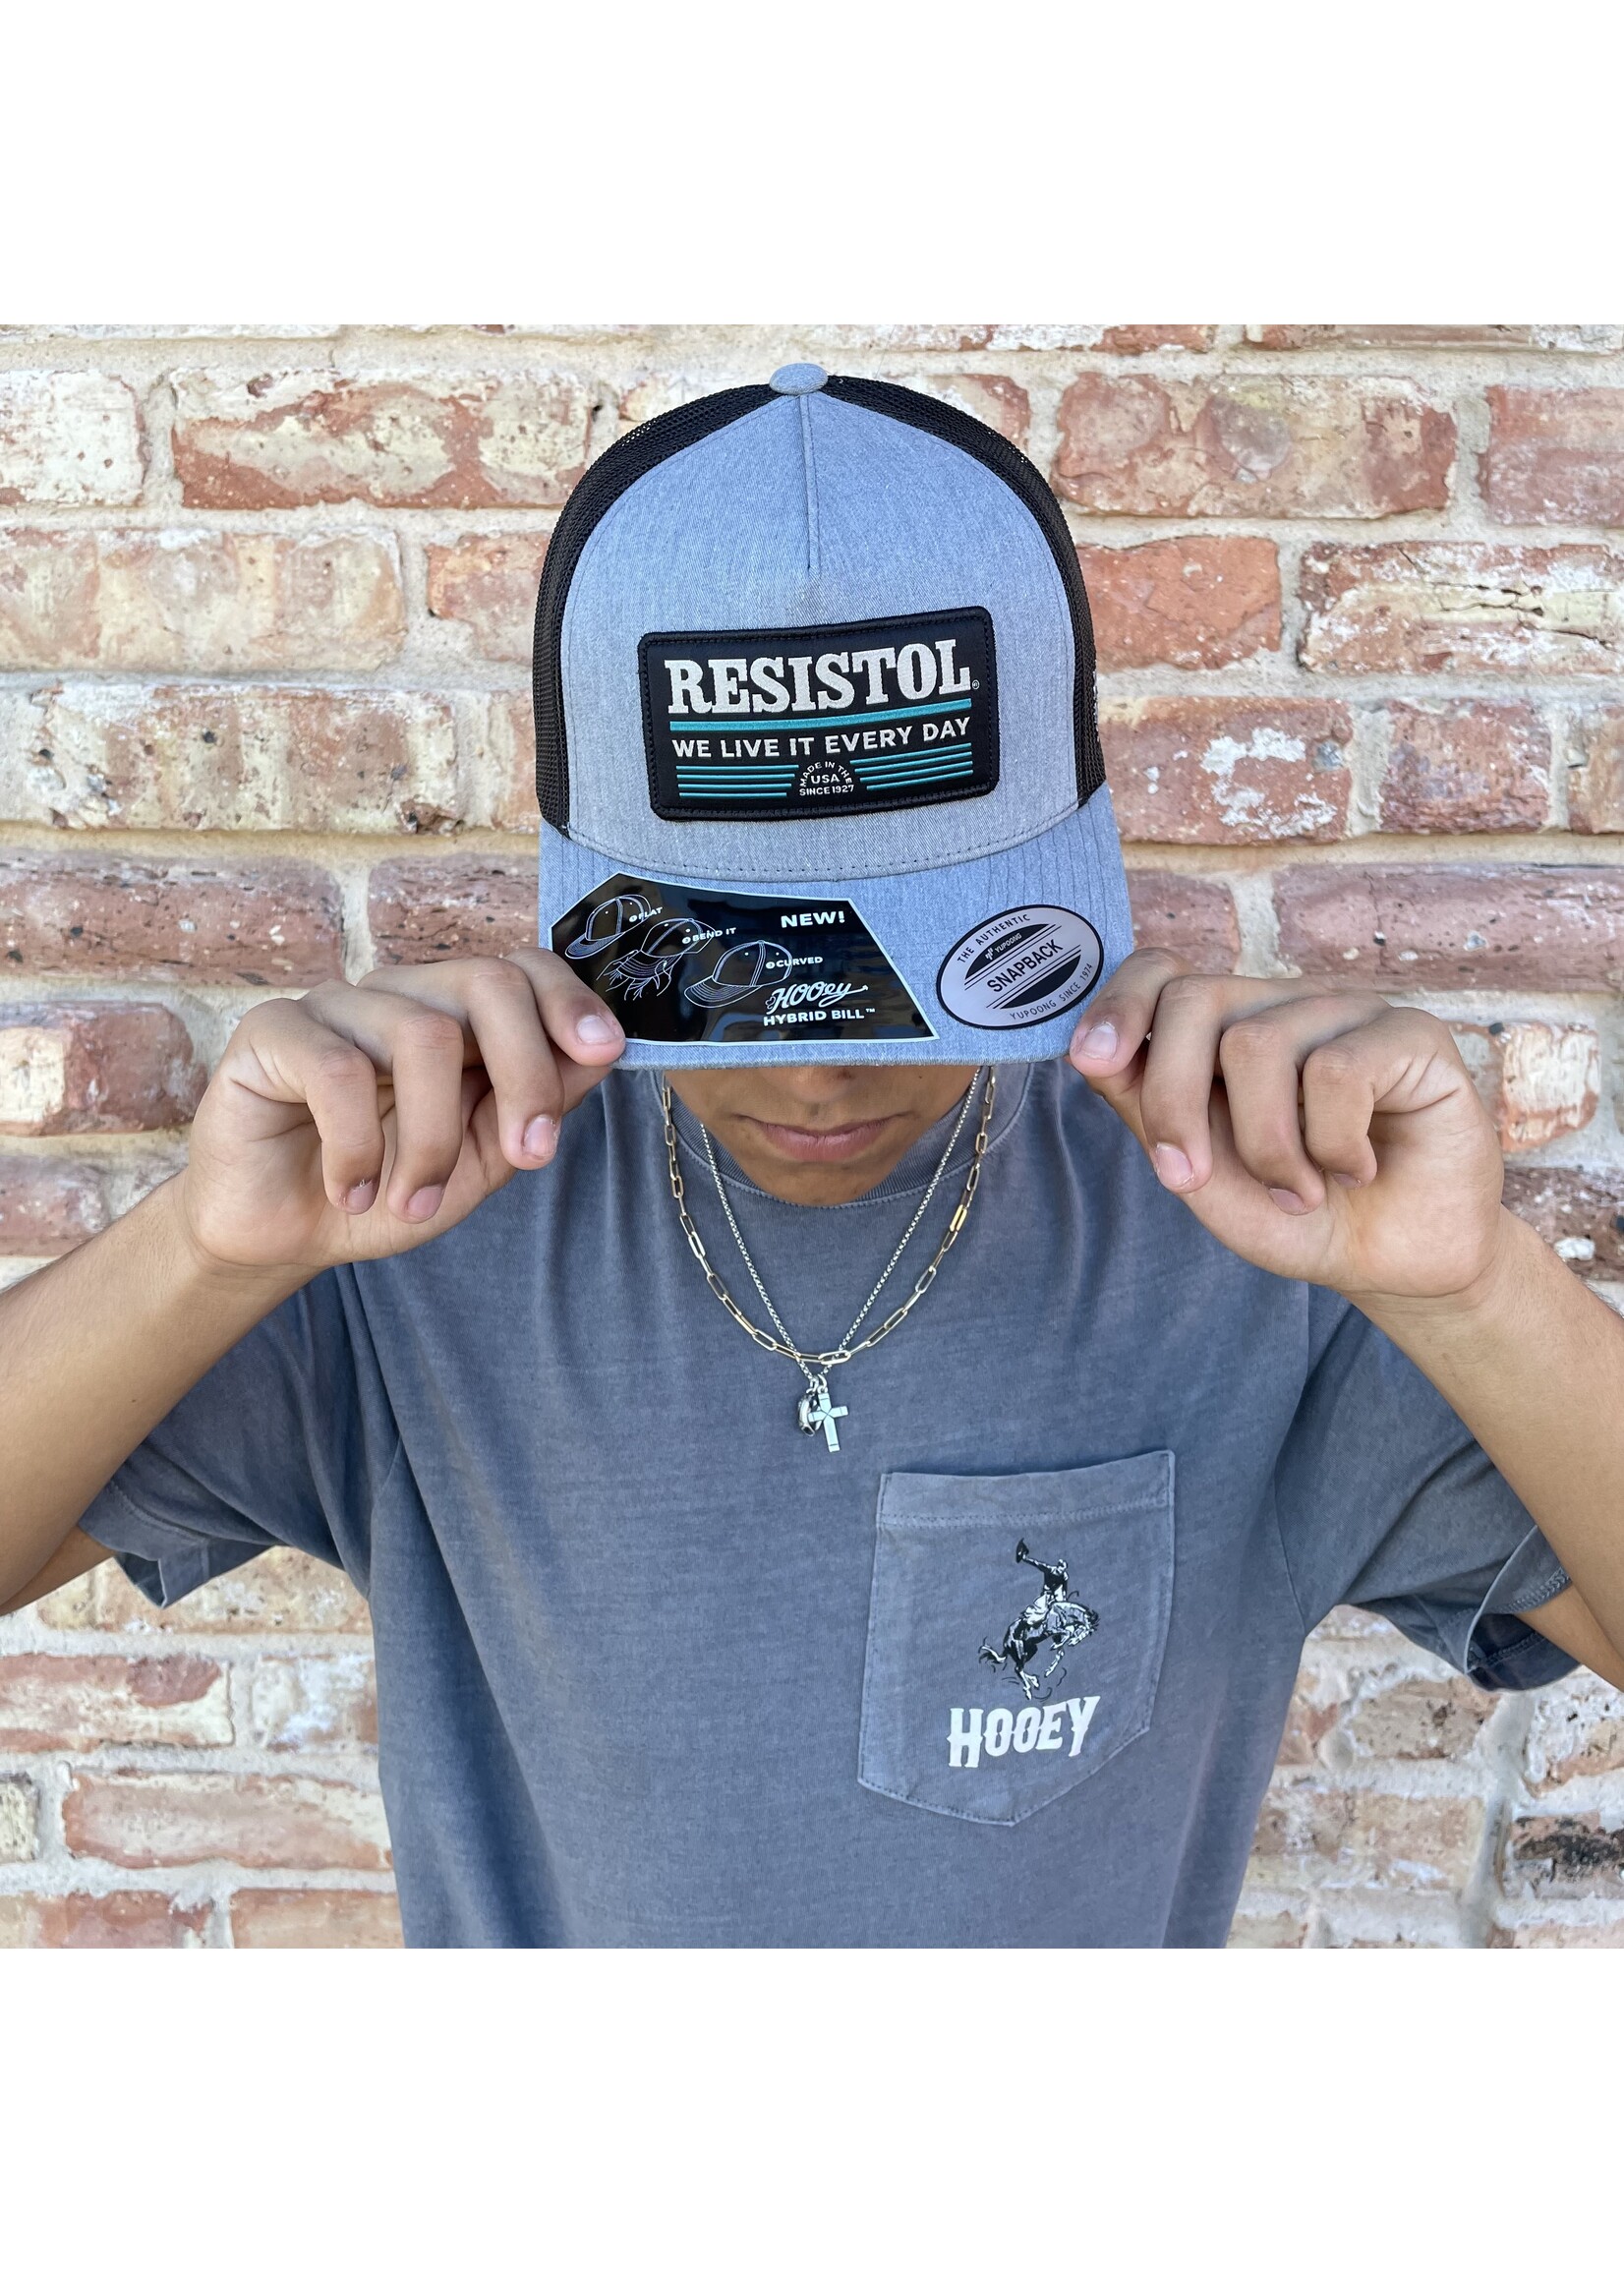 Hooey Resistol Grey/Black Hat